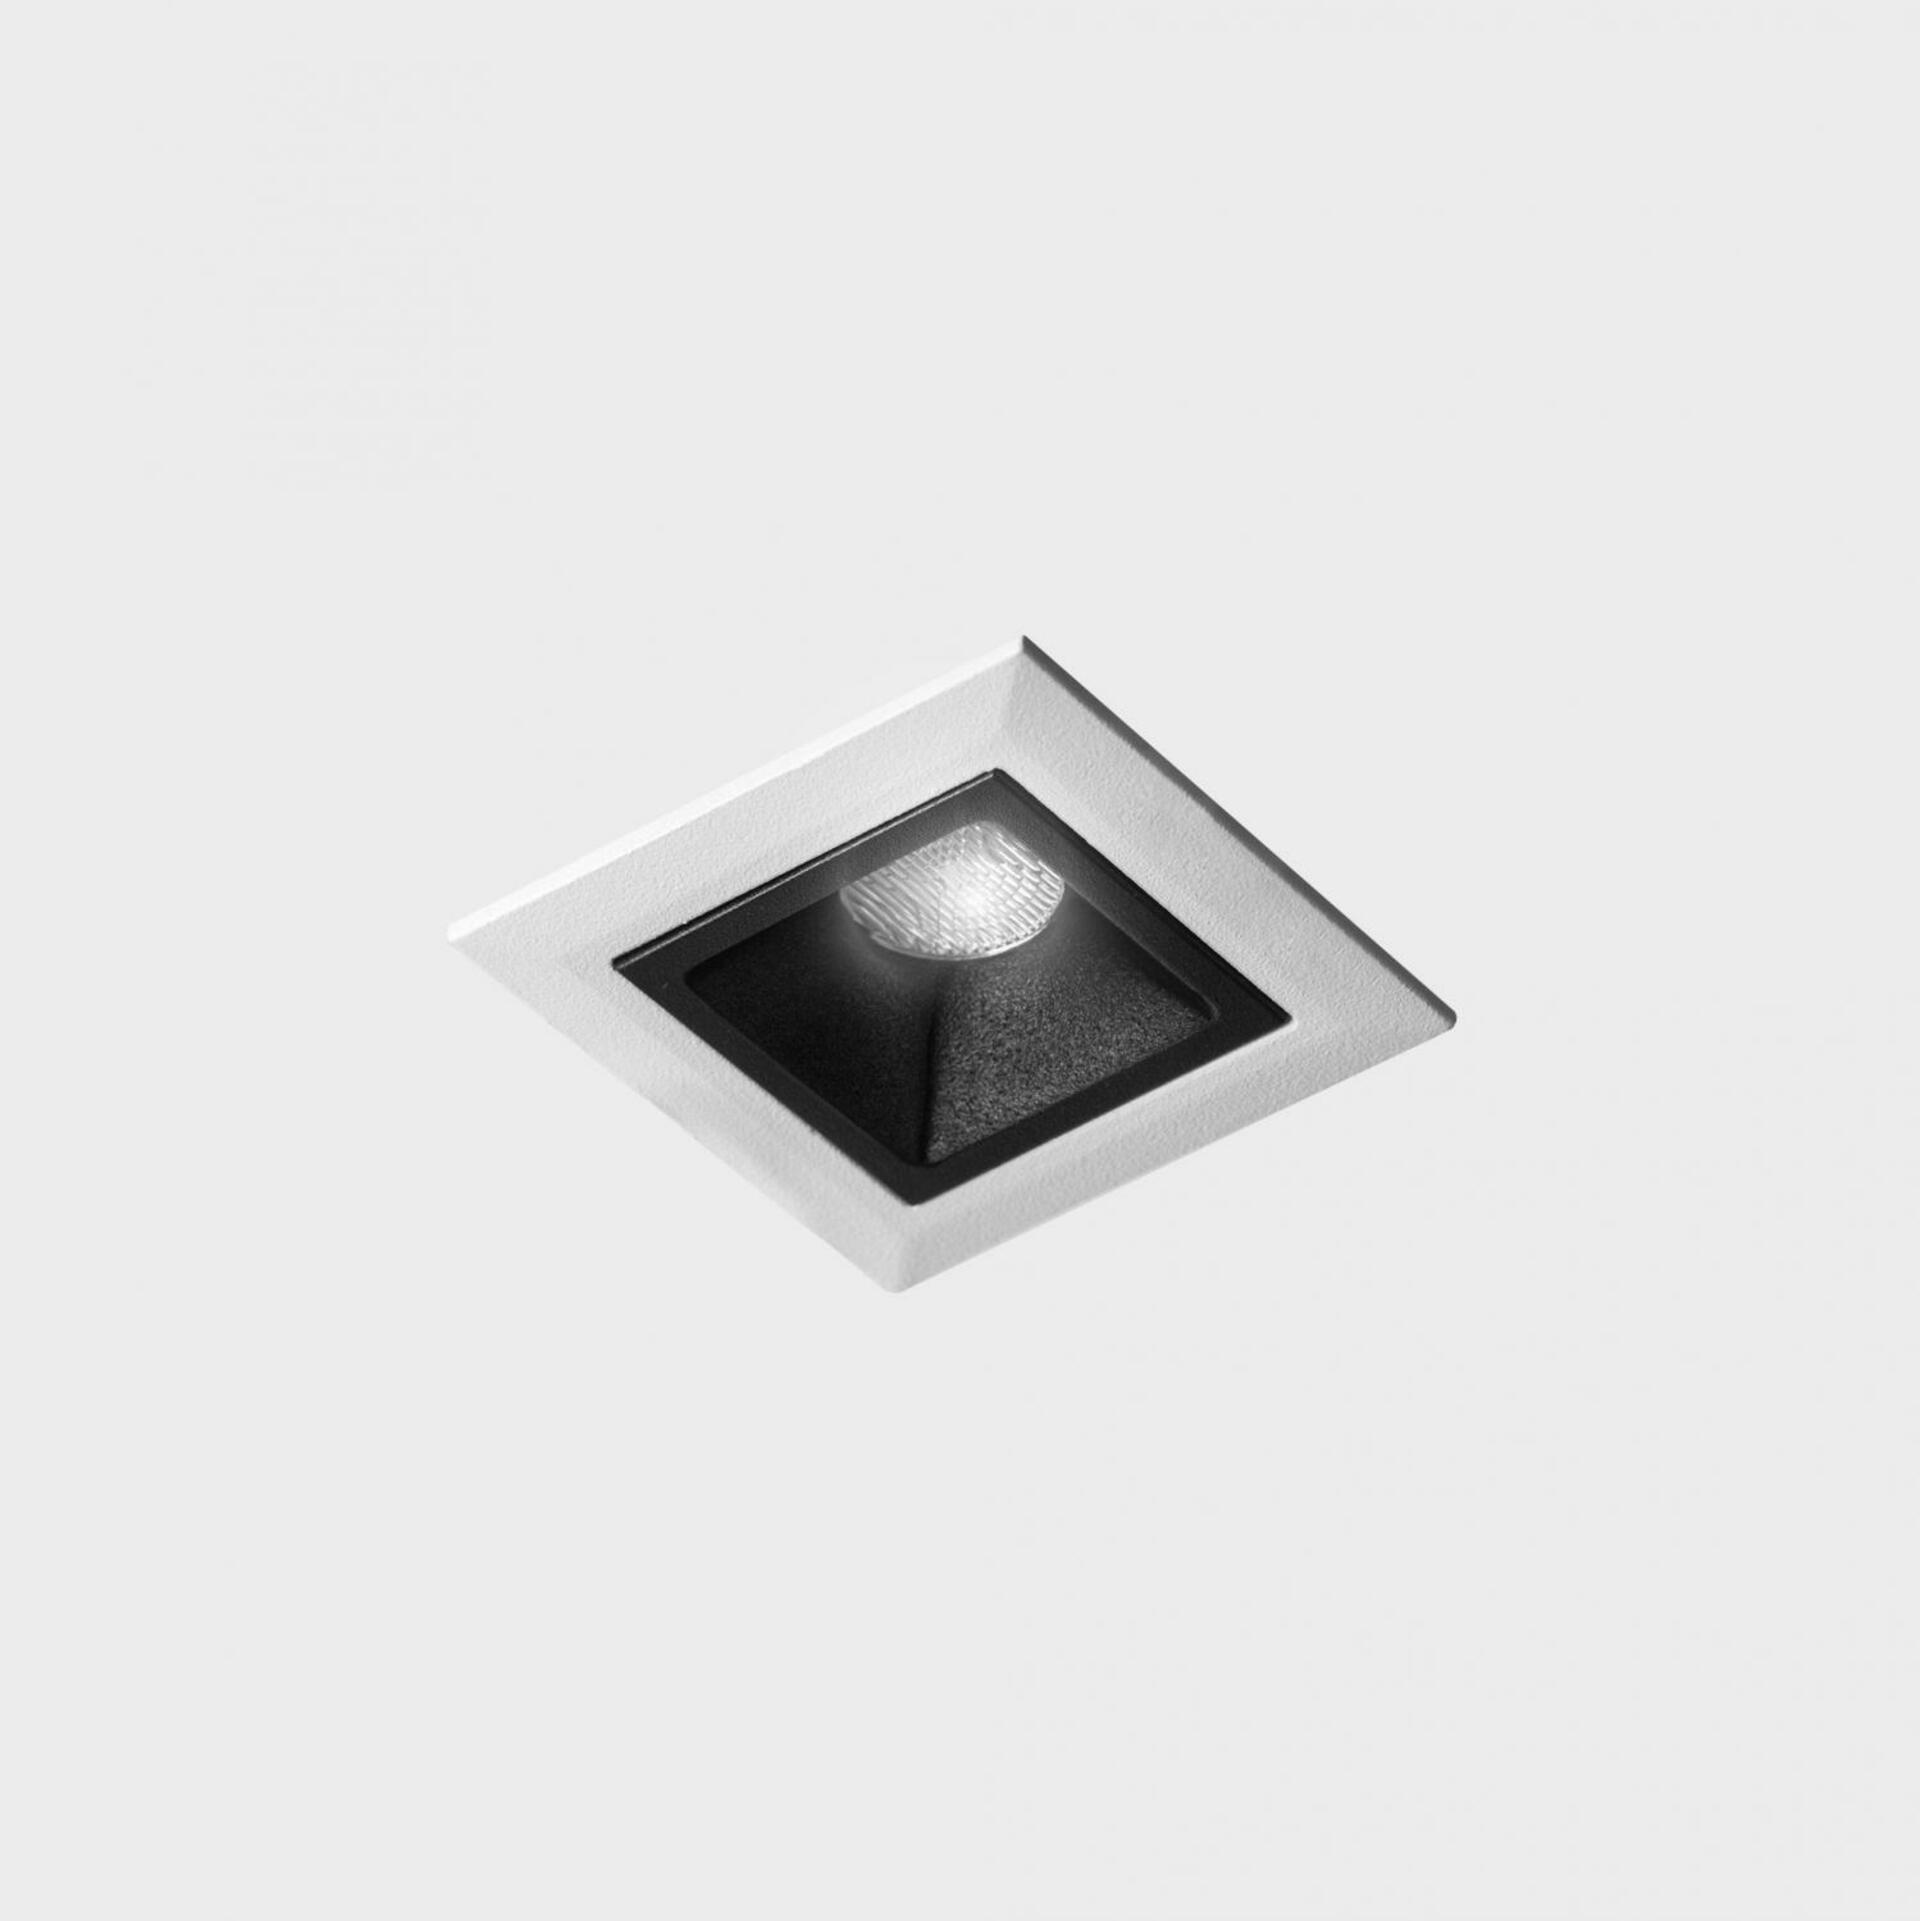 KOHL LIGHTING KOHL-Lighting NSES zapuštěné svítidlo s rámečkem 45x45 mm bílá-černá 2 W CRI 90 3000K PUSH